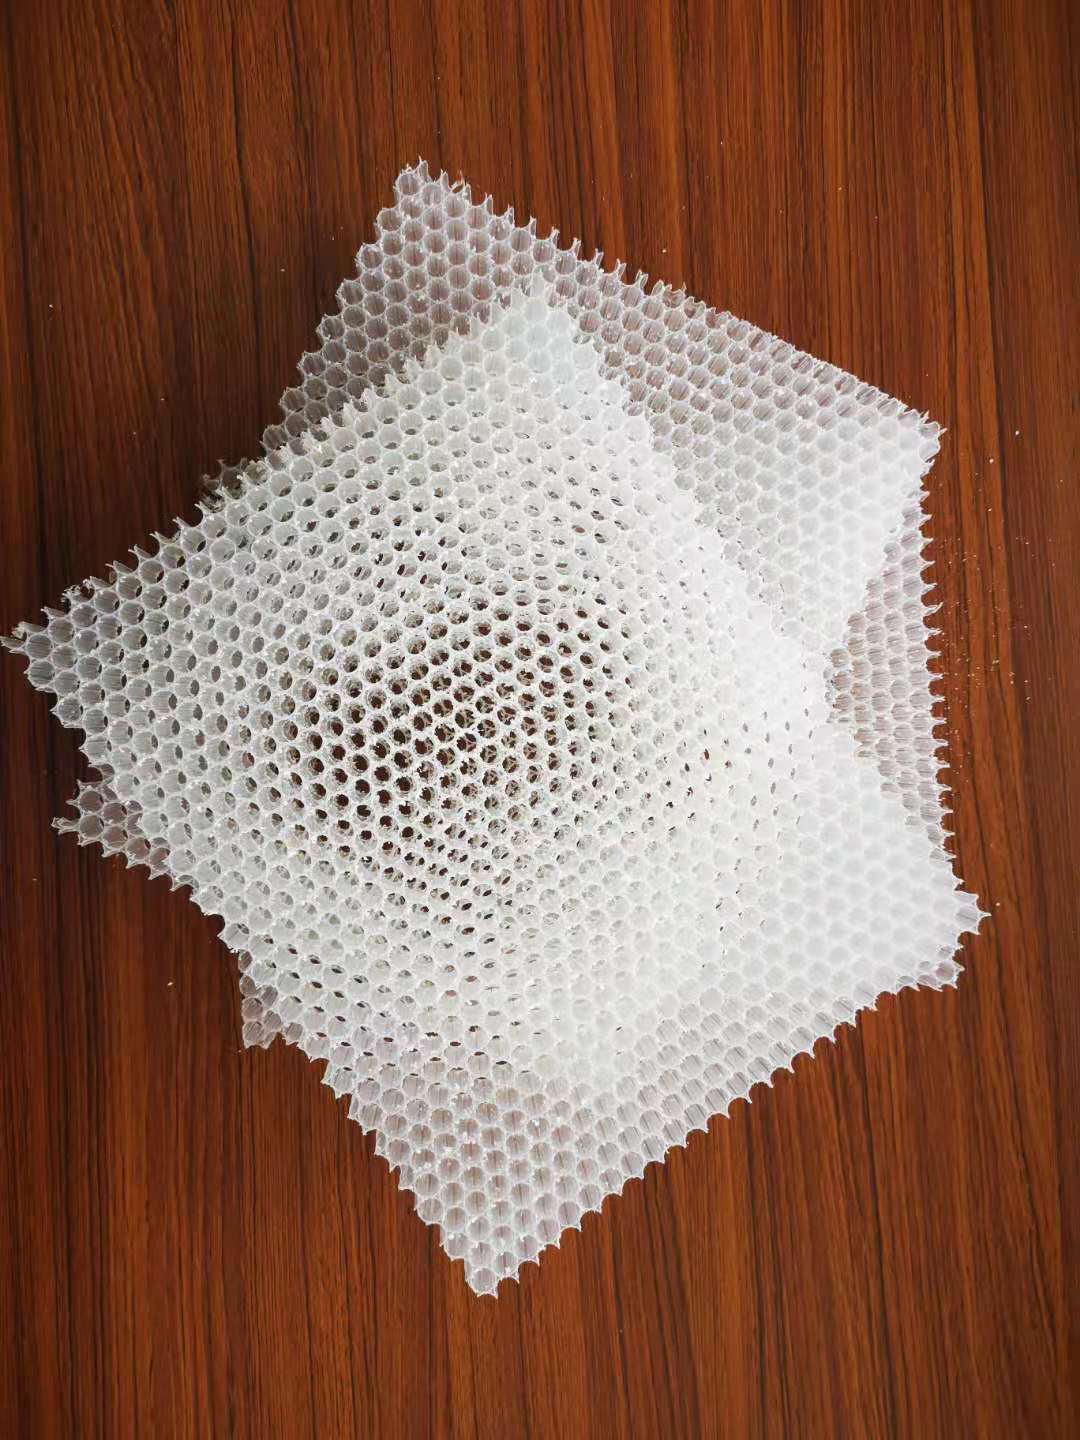 PP热塑性复合蜂窝芯材挤出生产线